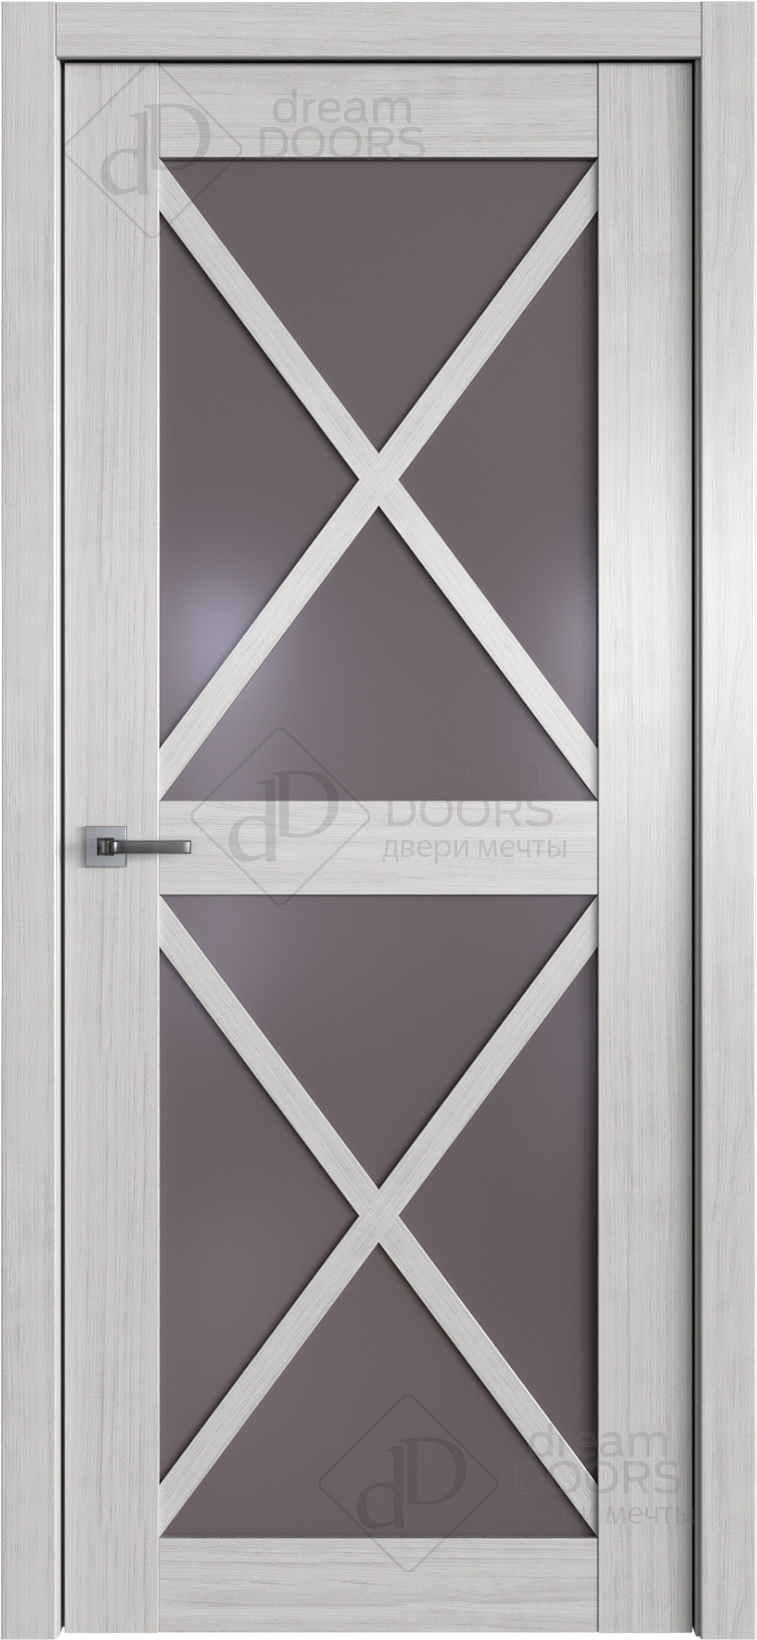 Dream Doors Межкомнатная дверь W37, арт. 20097 - фото №1